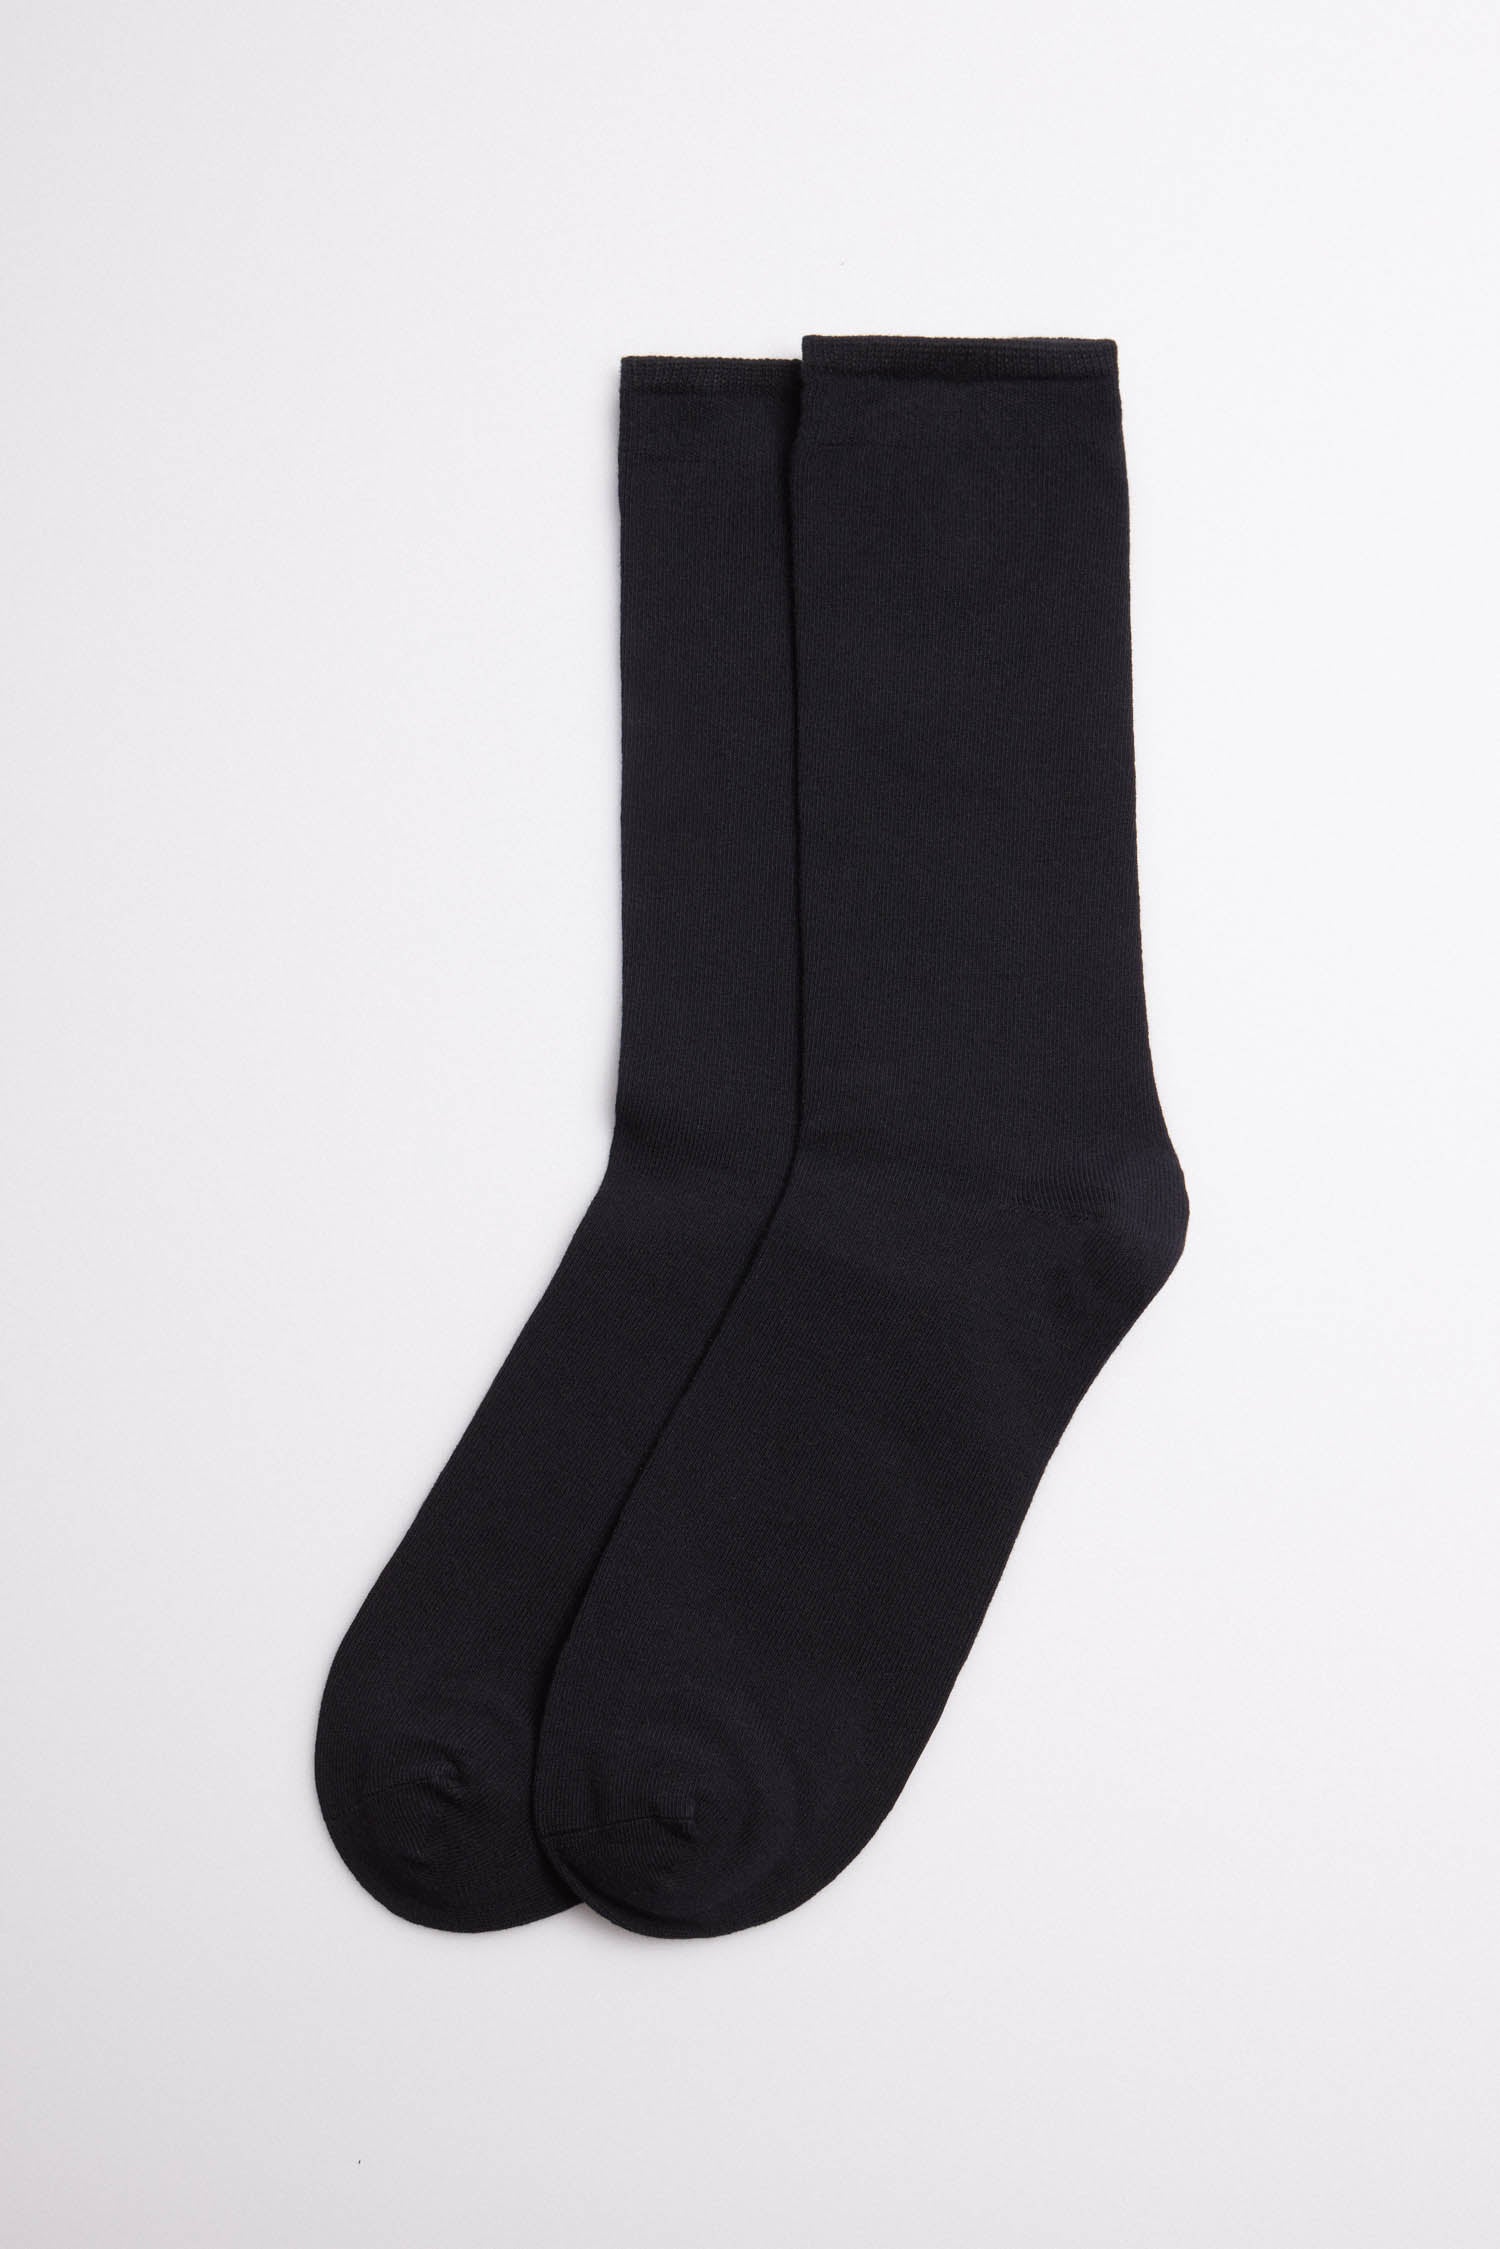 Calcetines lisos para hombre 100% algodón (paquete de 6) (zapato de EE. UU.  6.5 - 11.5) (negro), Negro 